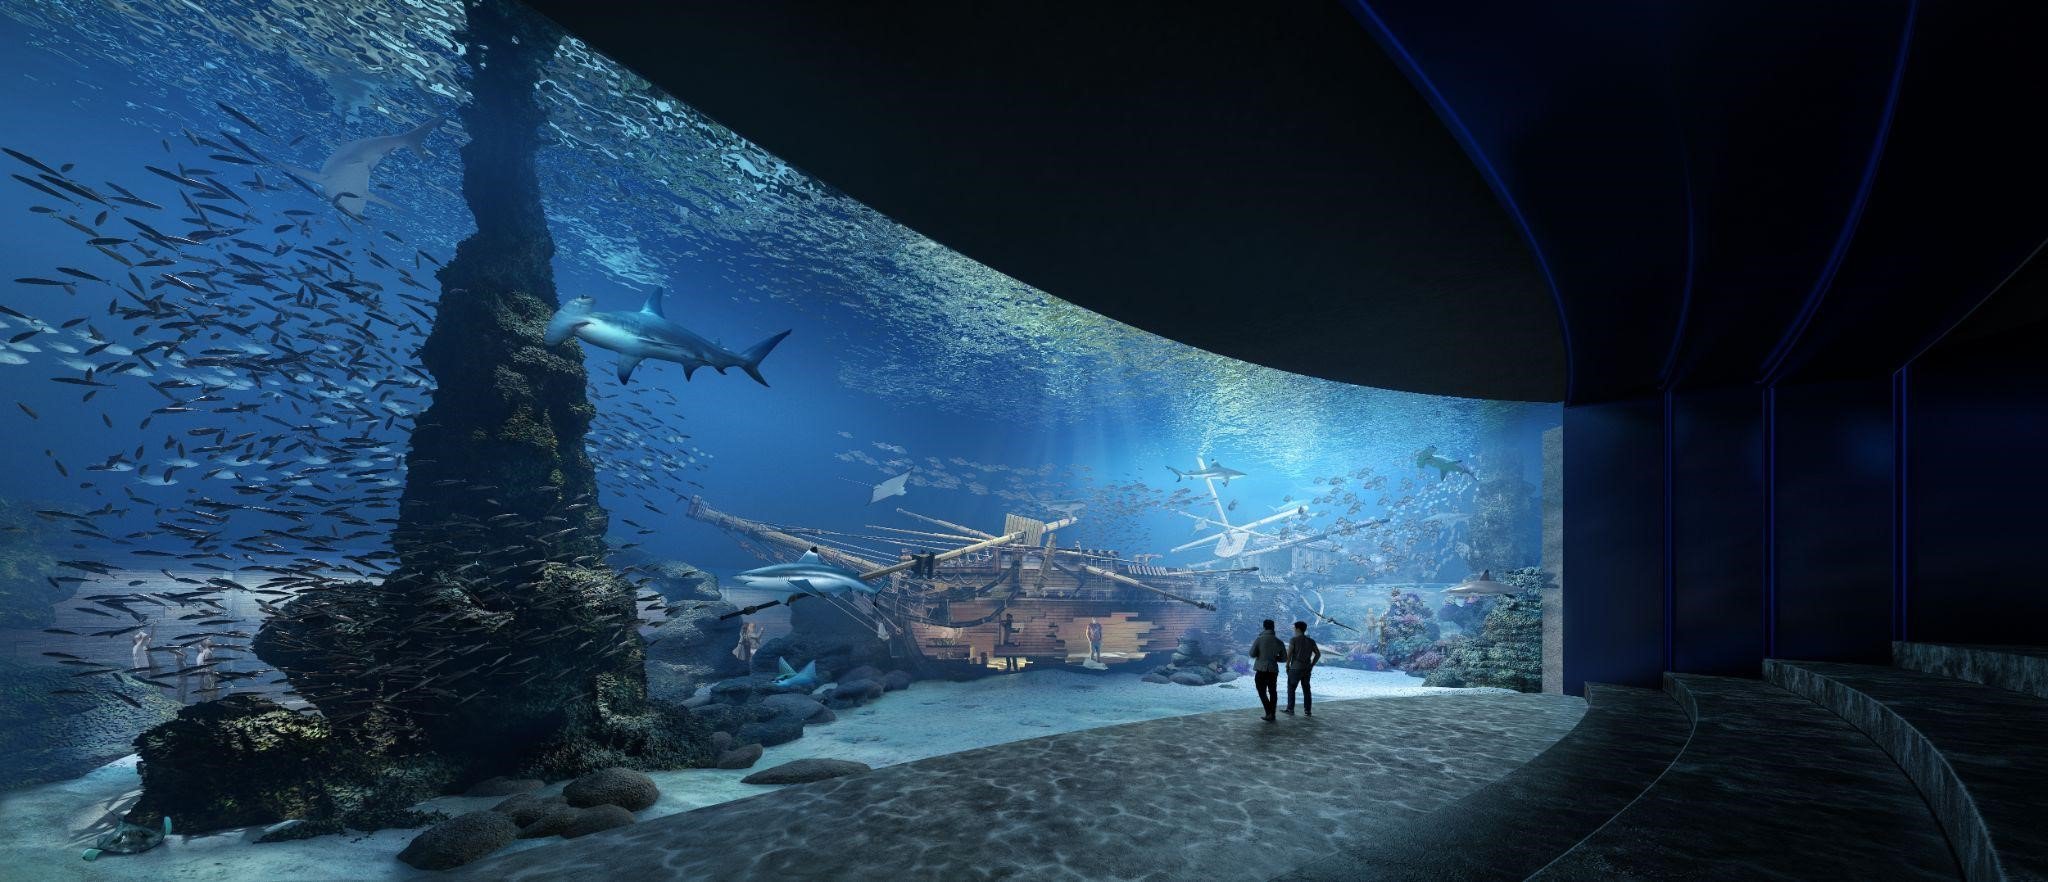 Thủy cung Lotte World Hà Nội – Thế giới đại dương đầy màu sắc sắp khai trương giữa lòng Thủ đô - 2